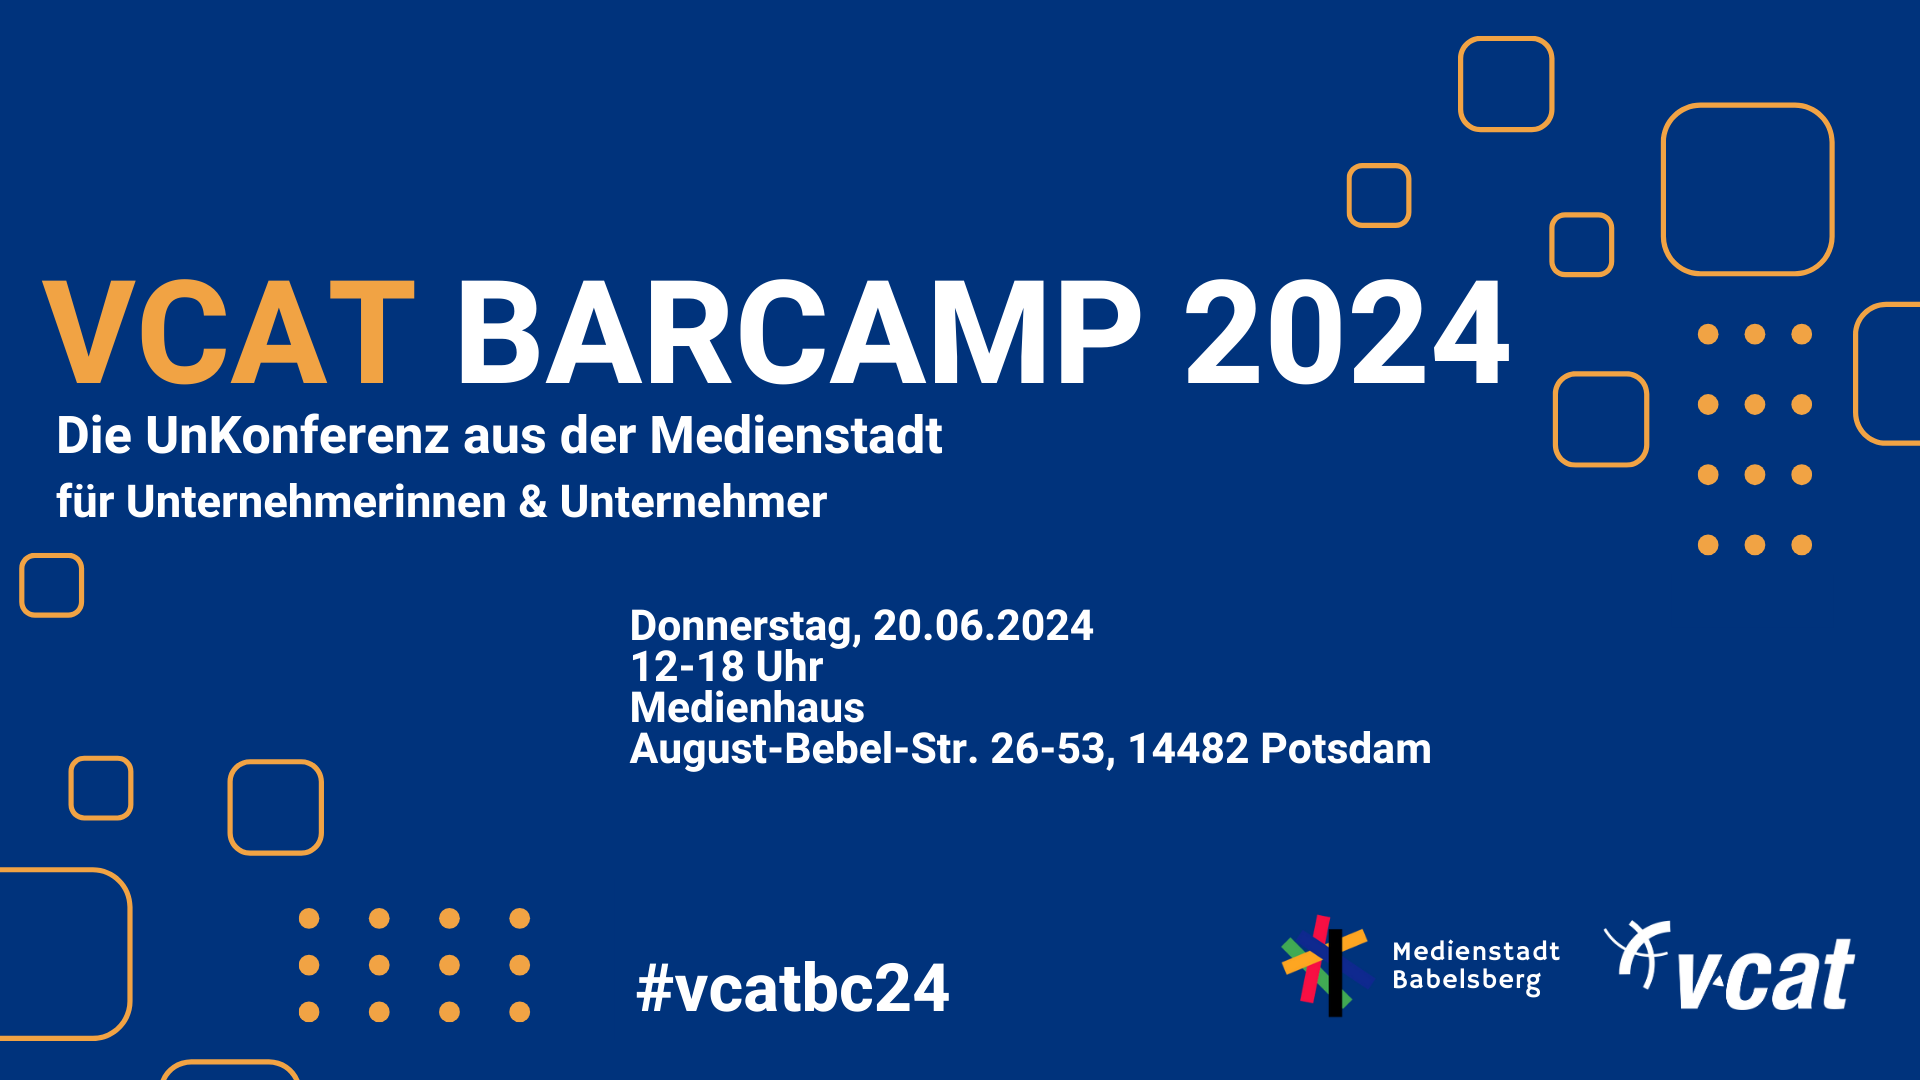 VCAT BarCamp 2024 – Die Unkonferenz aus der Medienstadt für Unternehmerinnen und Unternehmer